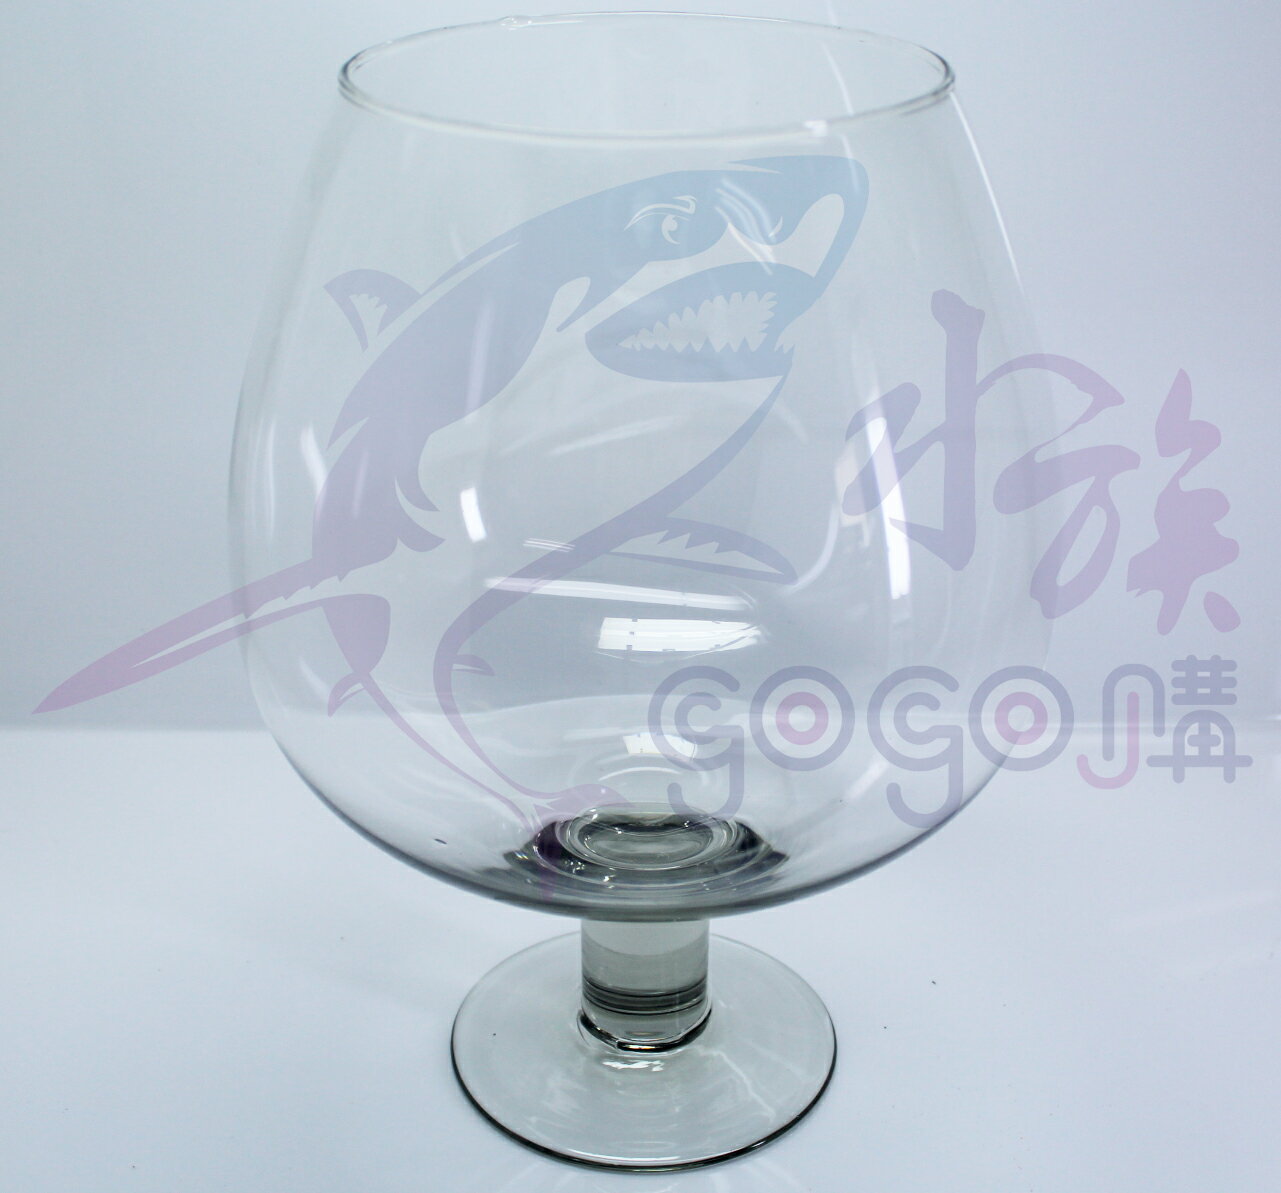 【水族嚇嚇叫】台灣製造 造型魚缸 觀賞魚缸 高透明玻璃 酒杯型 (大酒杯)